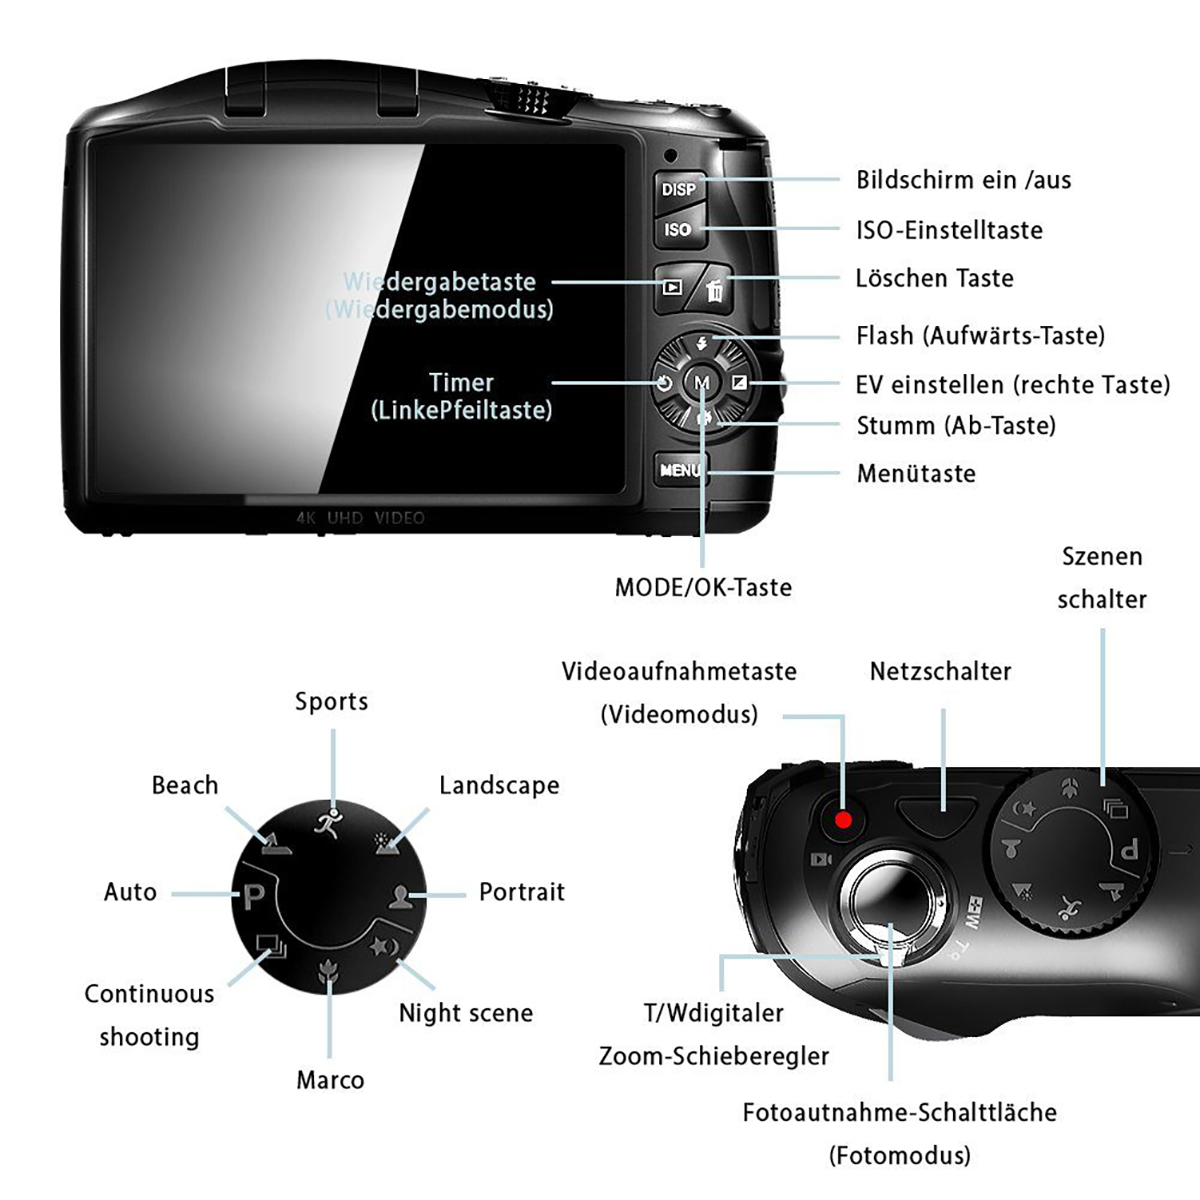 LINGDA 48-Megapixel-Fotoauflösung Digitalkamera für Schwarz, Unterstützung mit 4K-Videoaufnahmen 3in